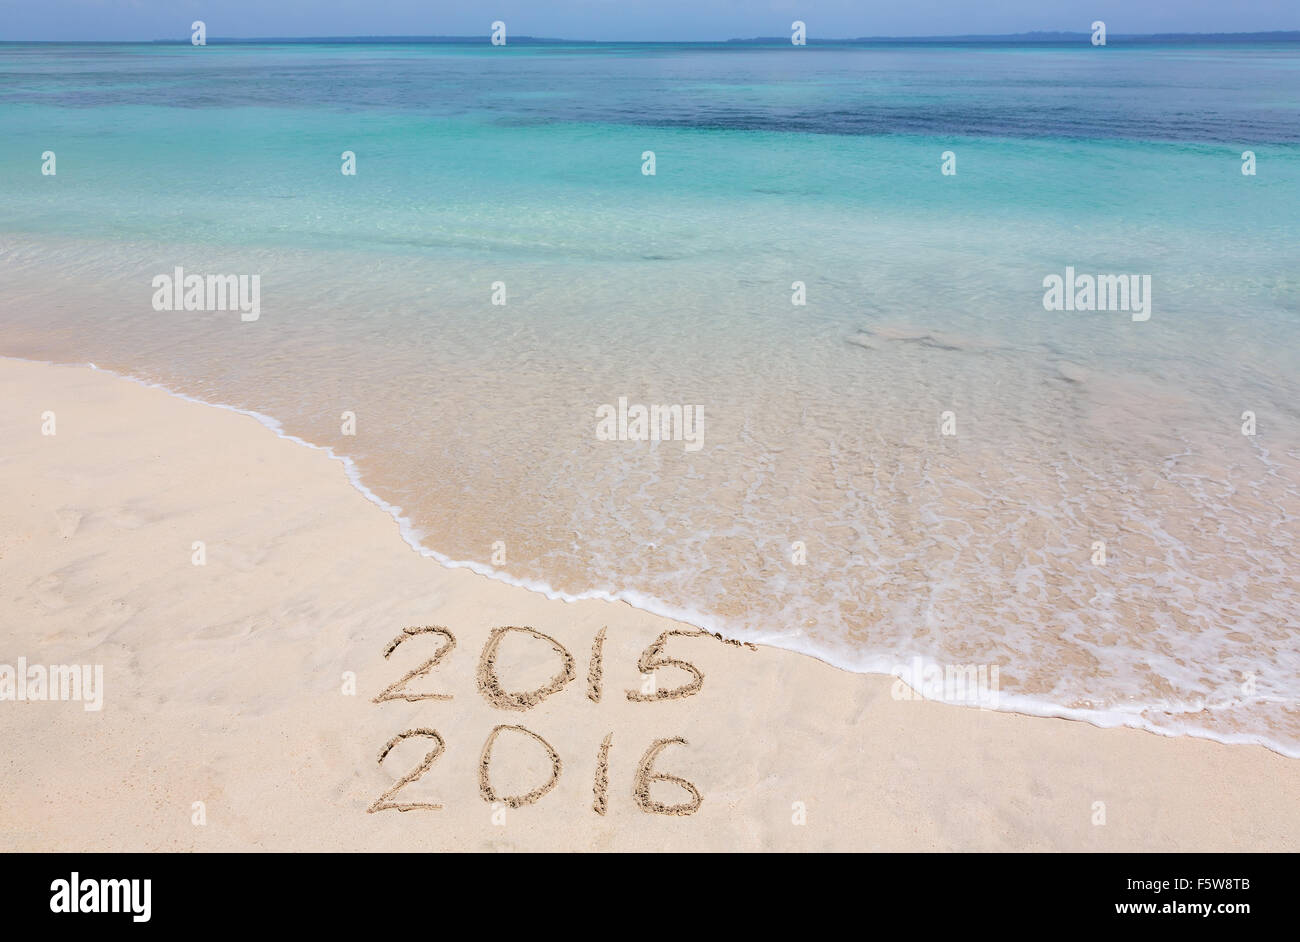 Anni 2015 e 2016 sono iscritte sulla spiaggia sabbiosa Foto Stock